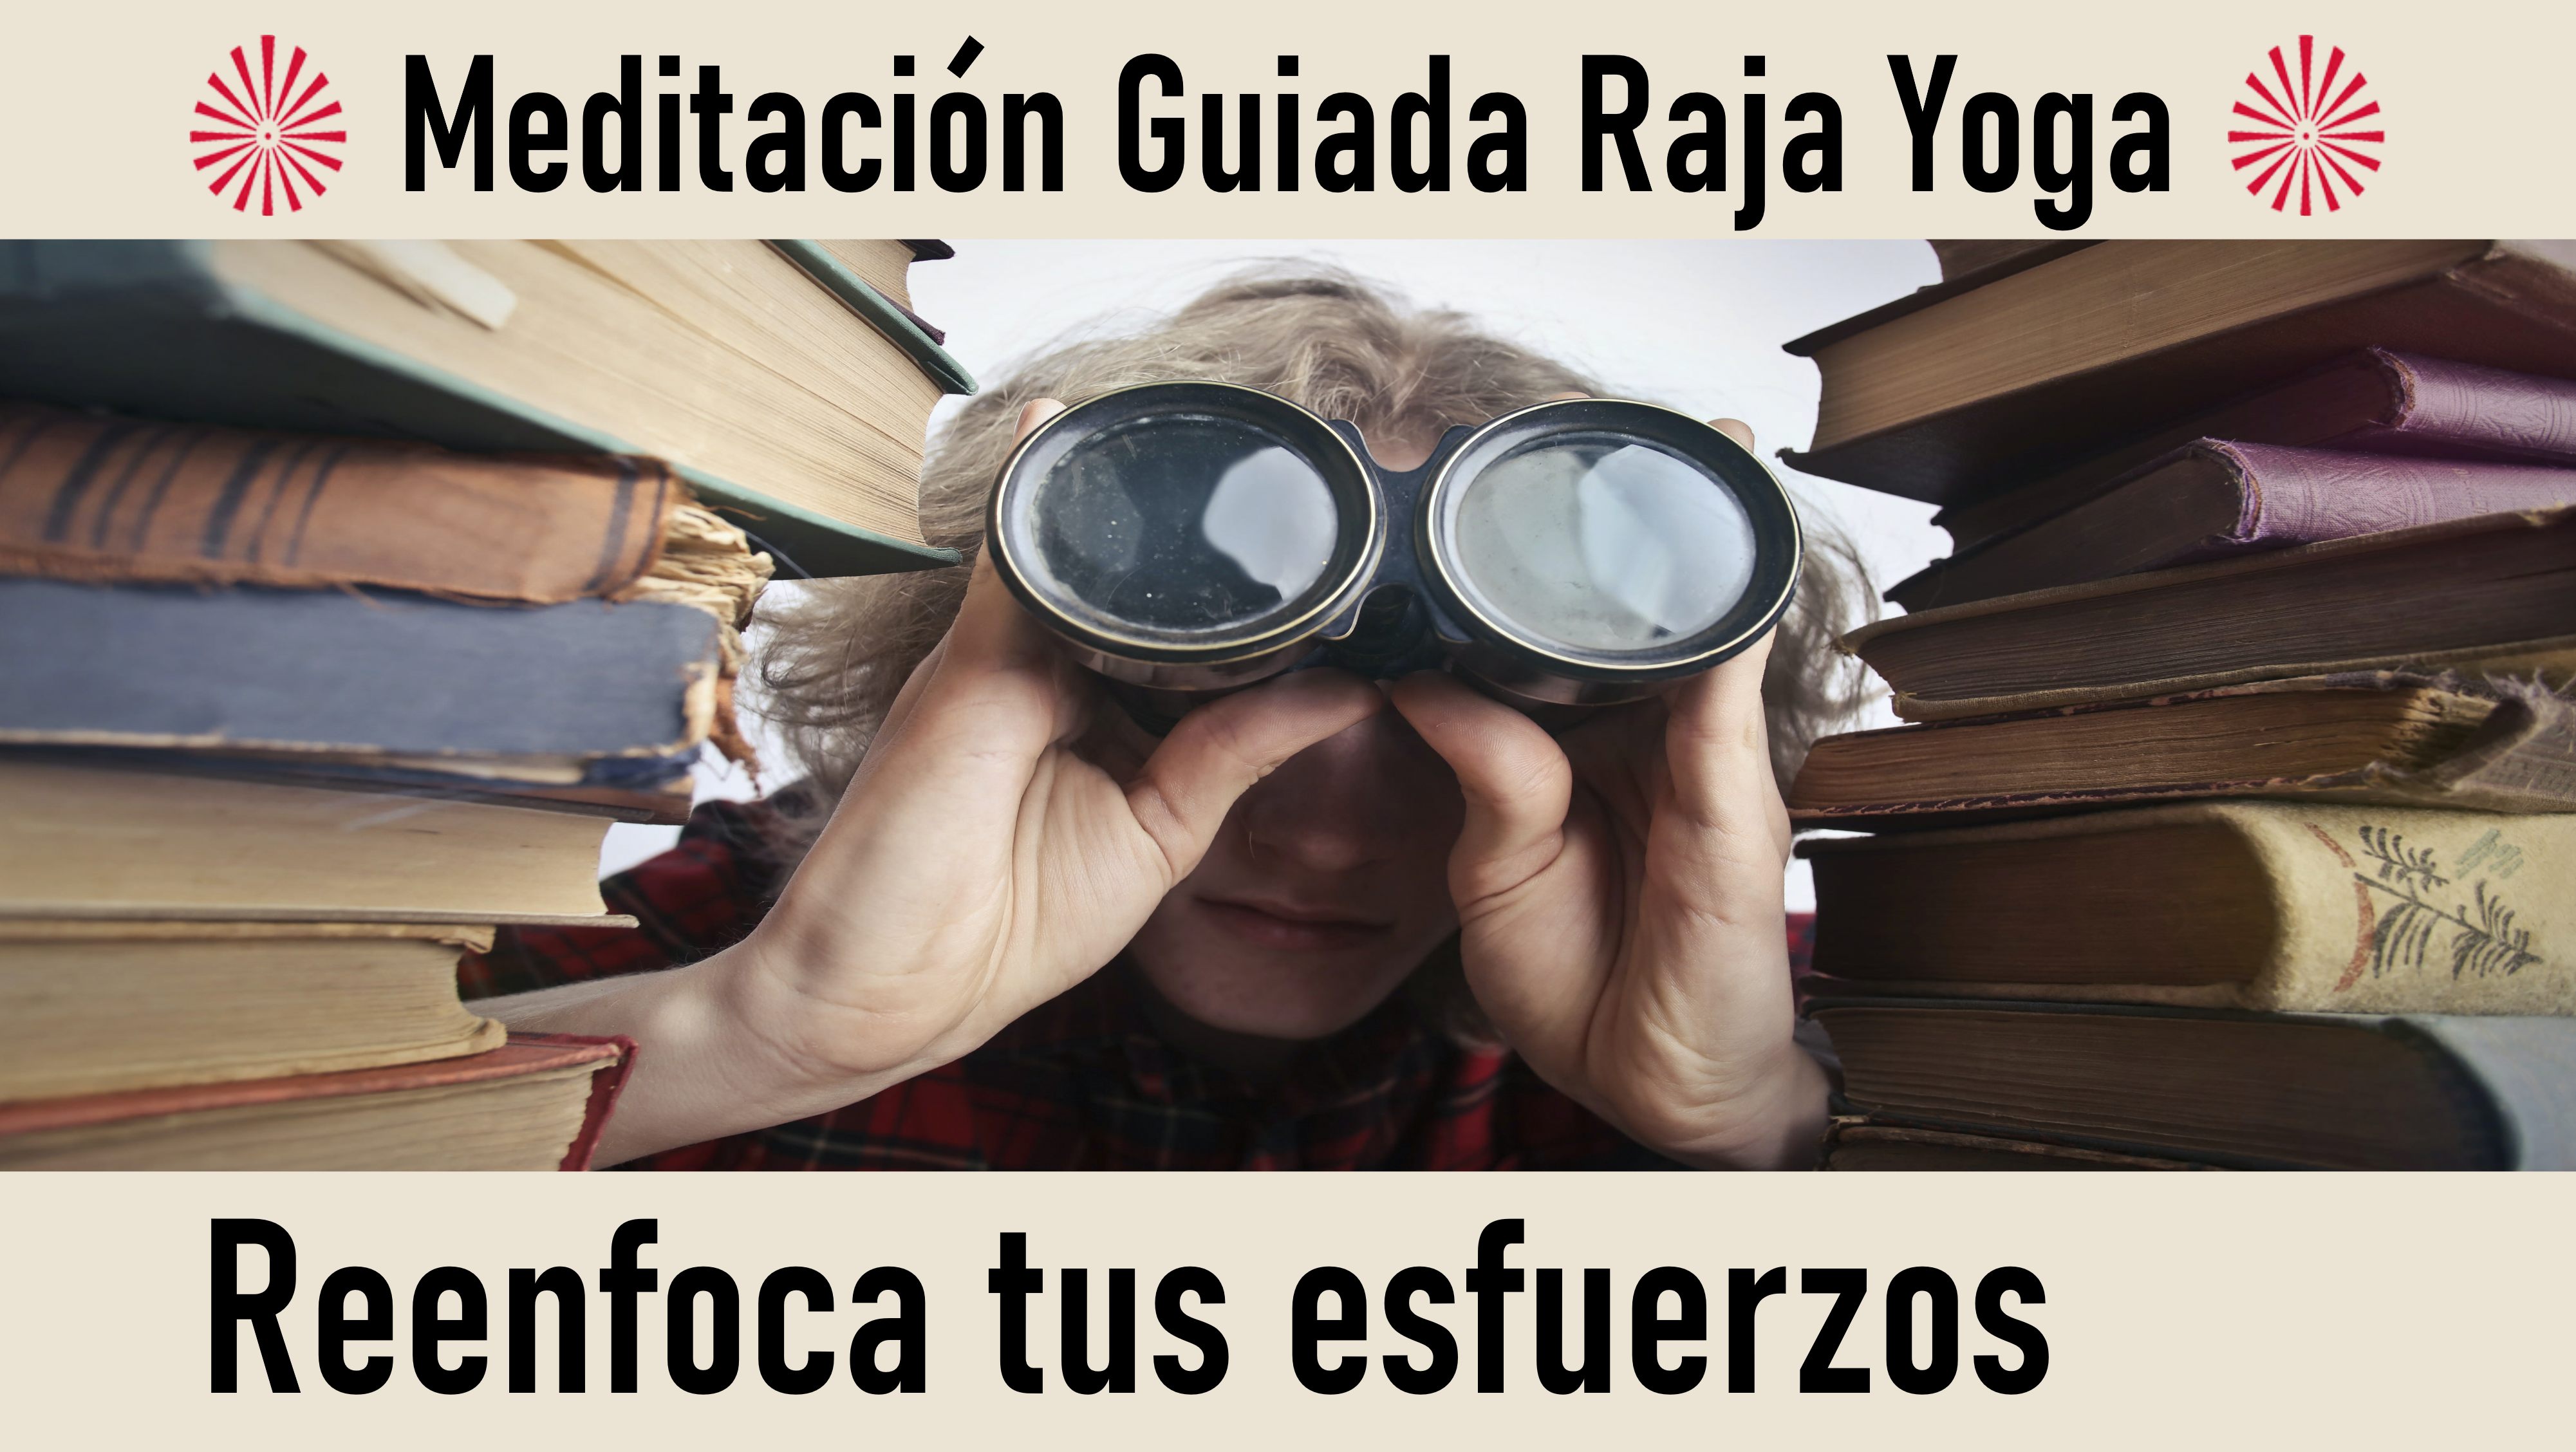 Meditación Raja Yoga: Reenfoca tus esfuerzos (14 Septiembre 2020) On-line desde Madrid